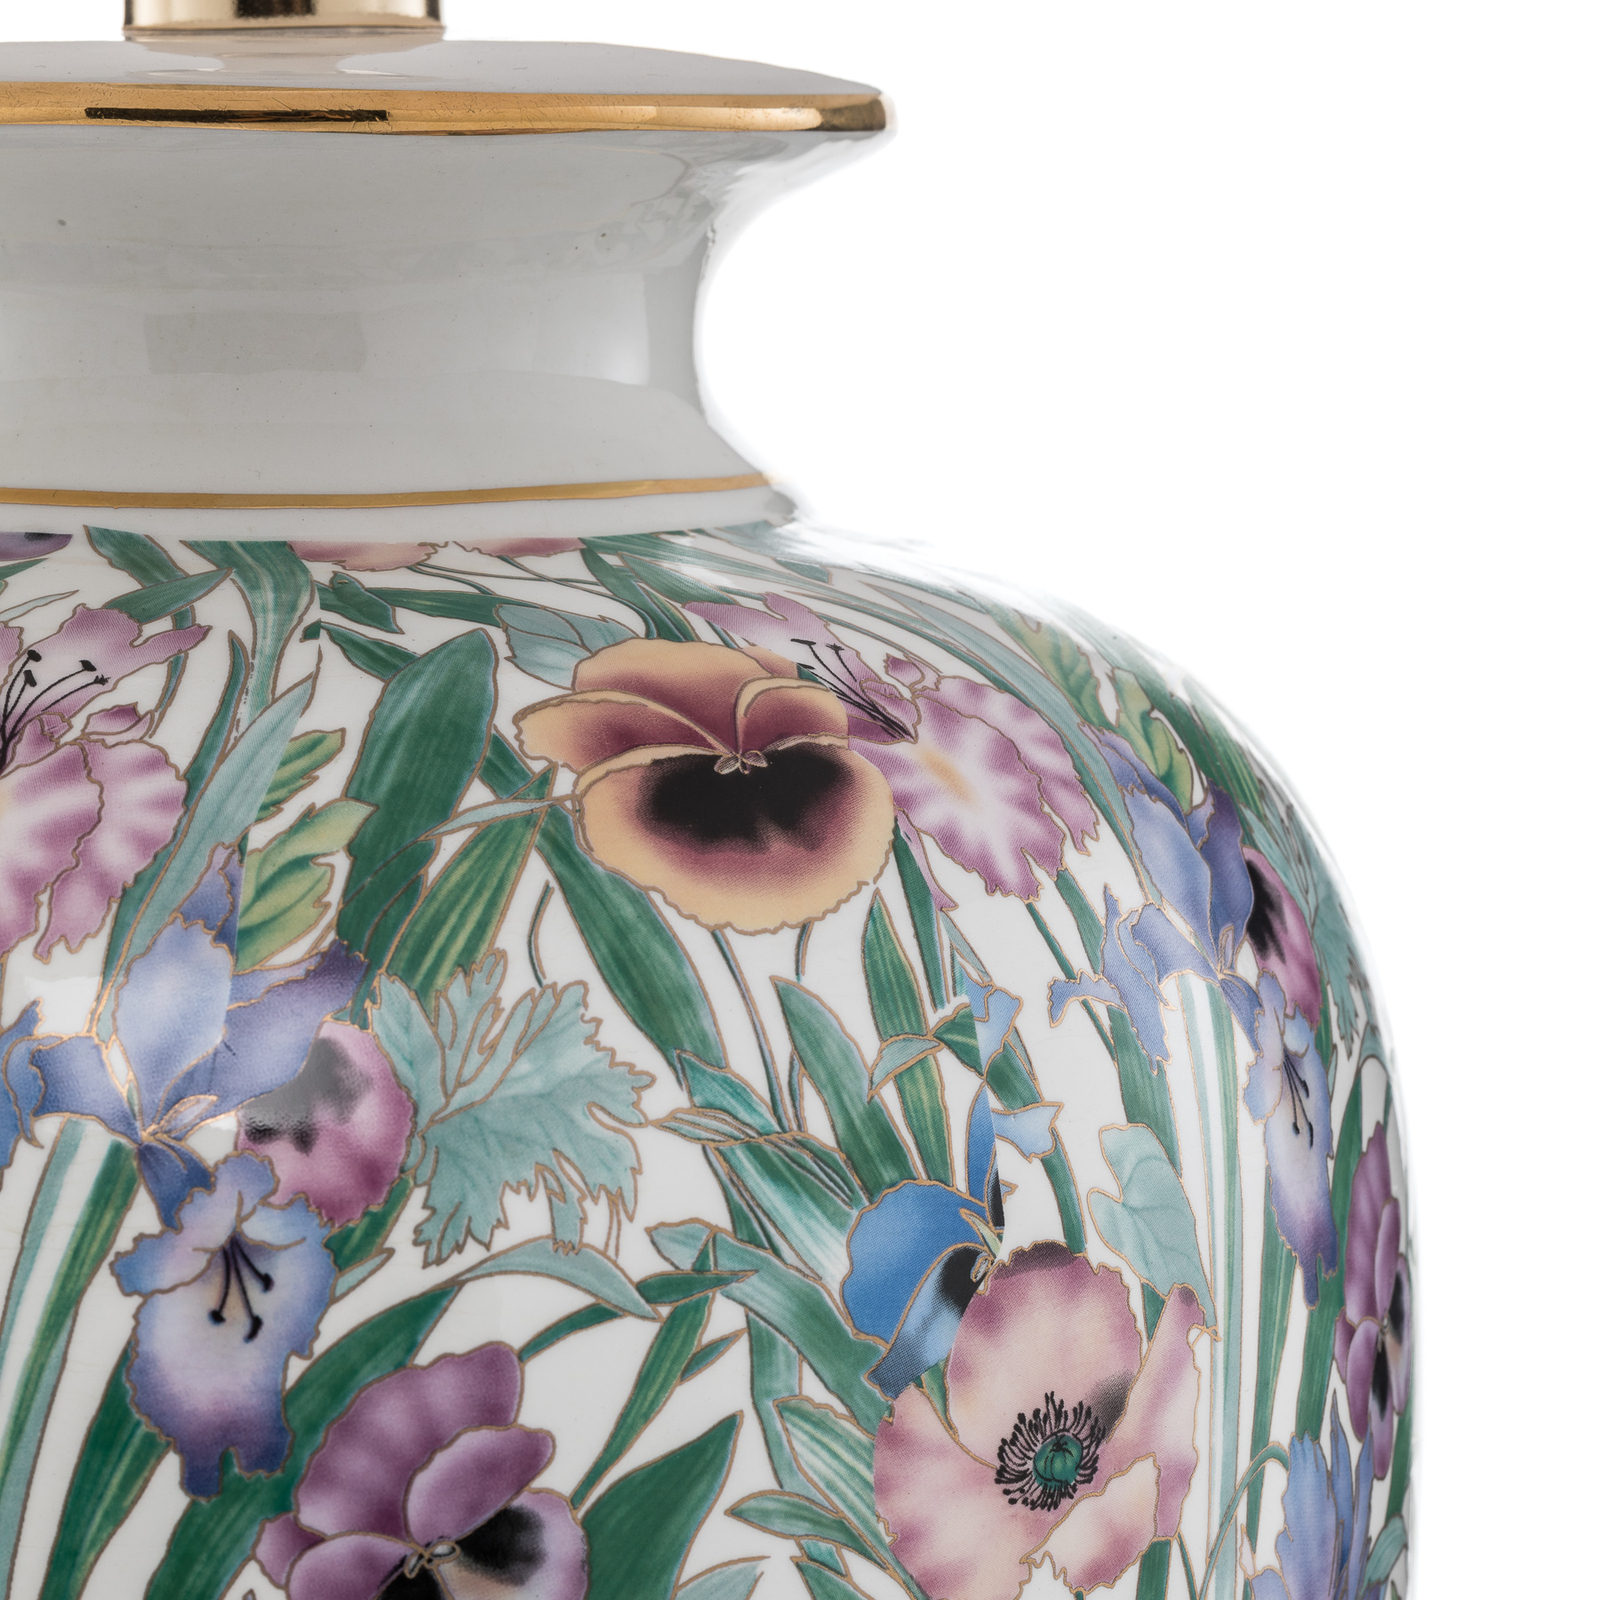 KOLARZ Giardino Panse – stolní lampa květiny 50 cm